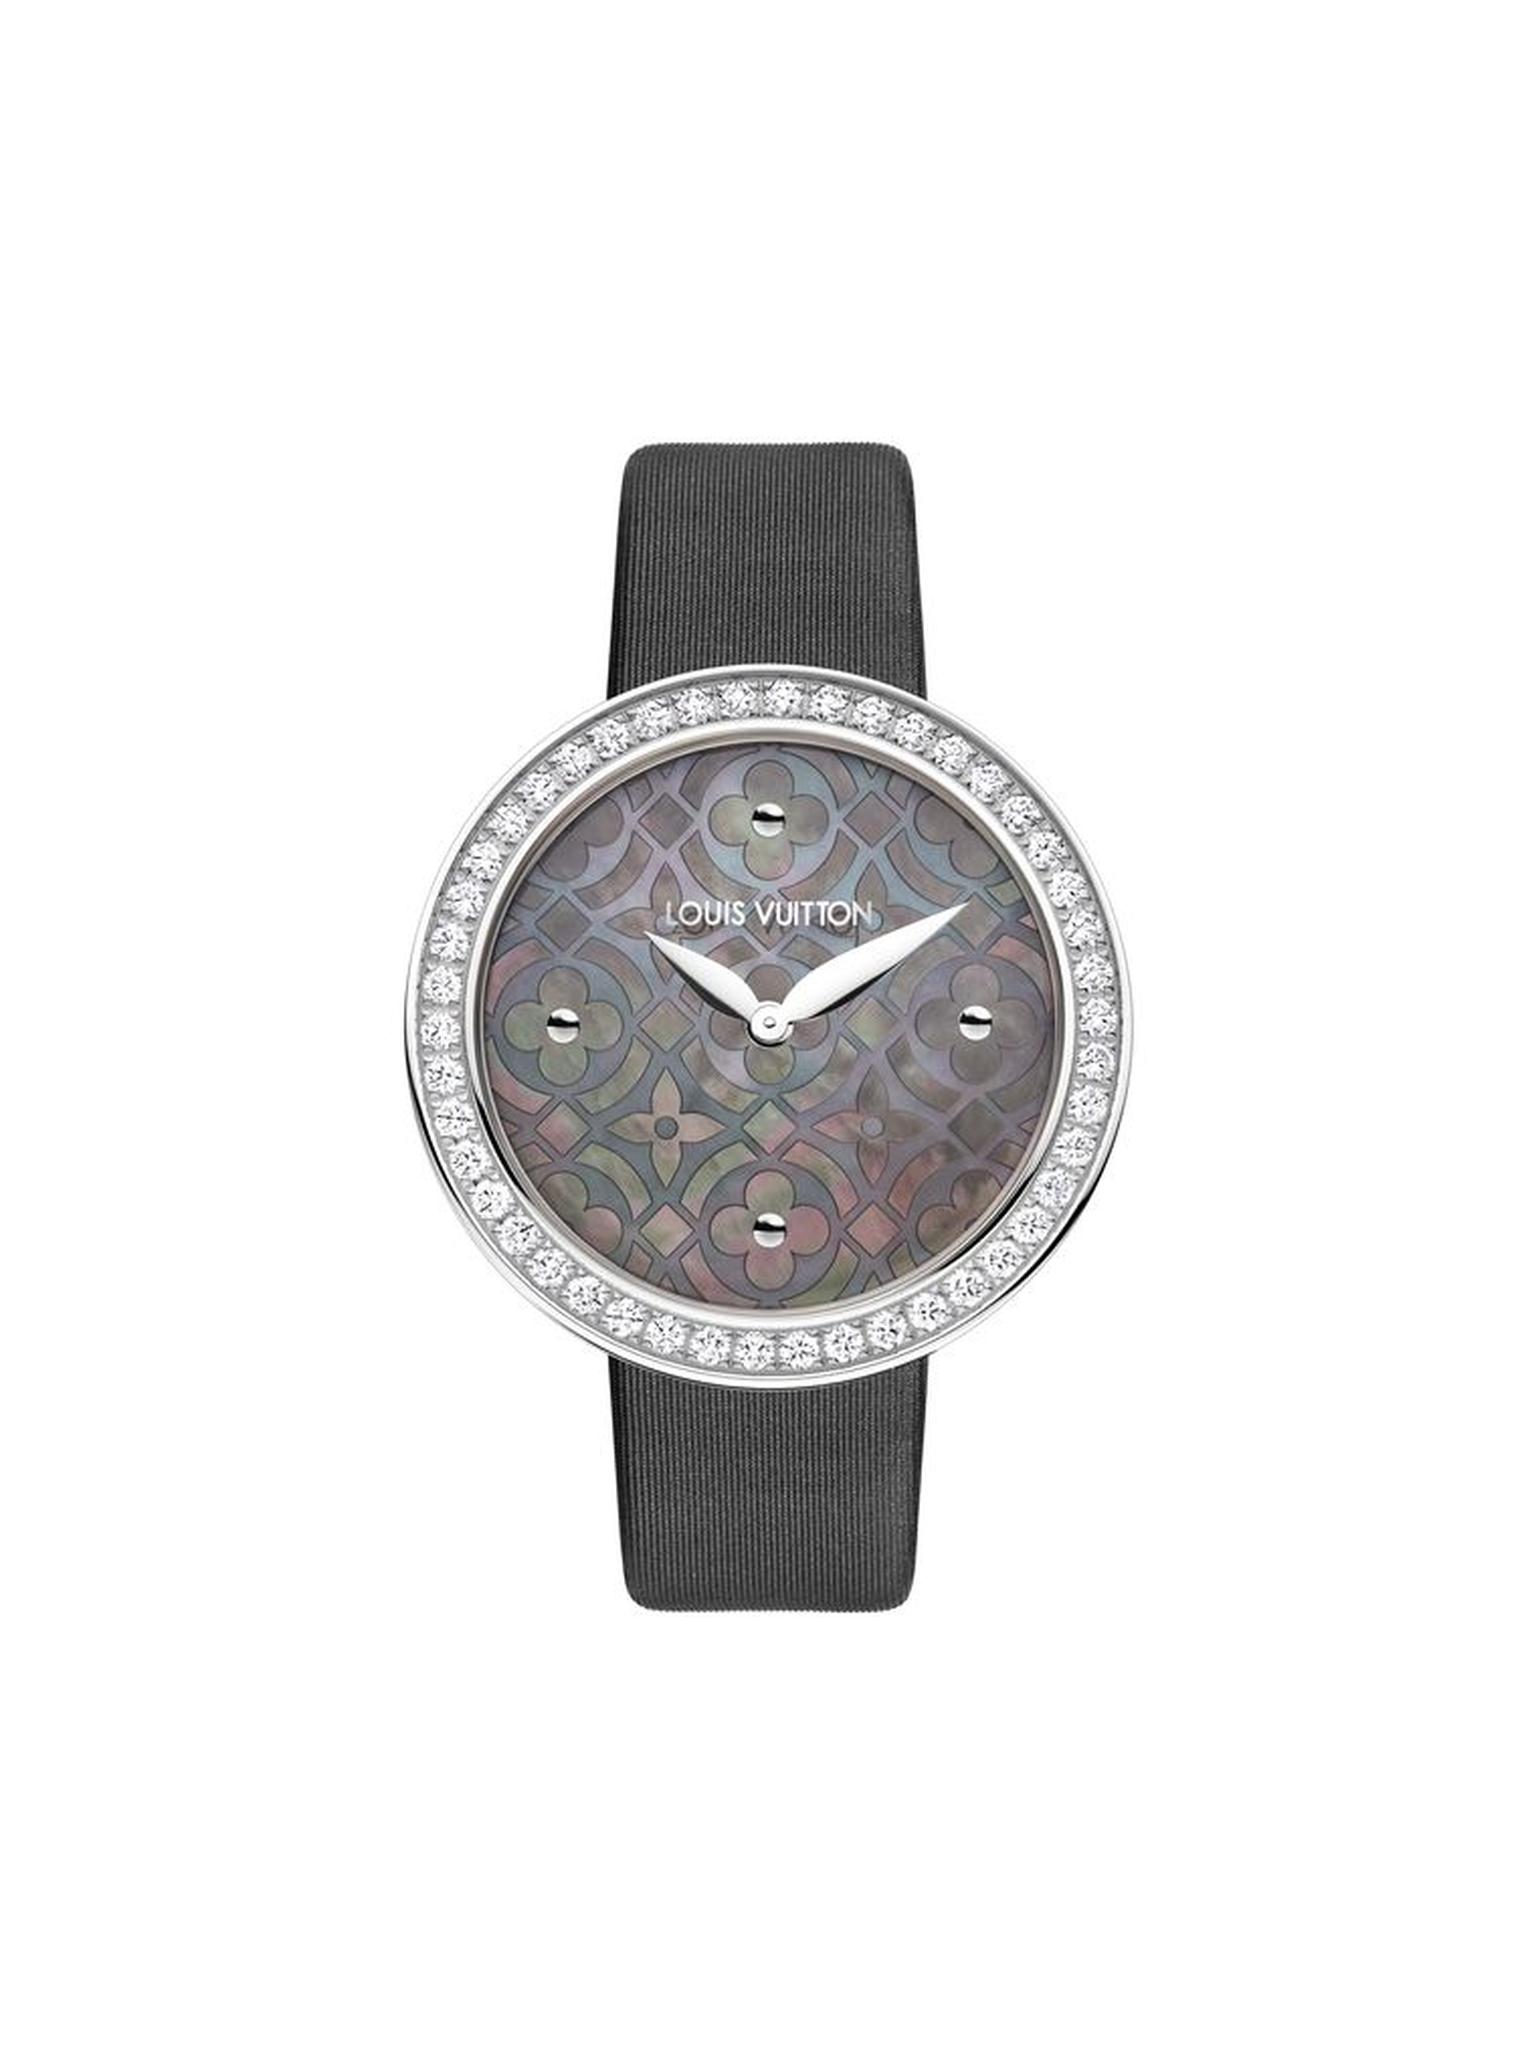 Louis Vuitton Dentelle de Monogram watch with a grey Polynesian pearl dial